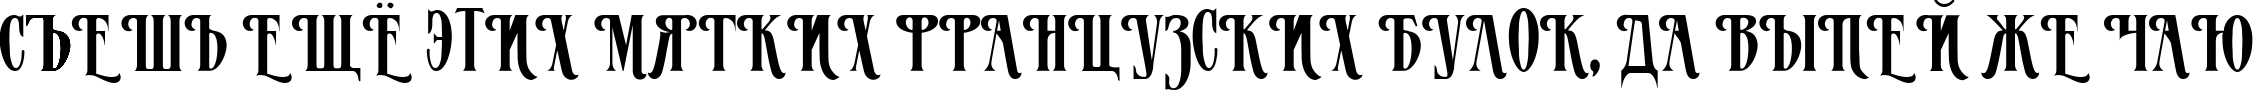 Пример написания шрифтом MazamaPlain Light текста на русском